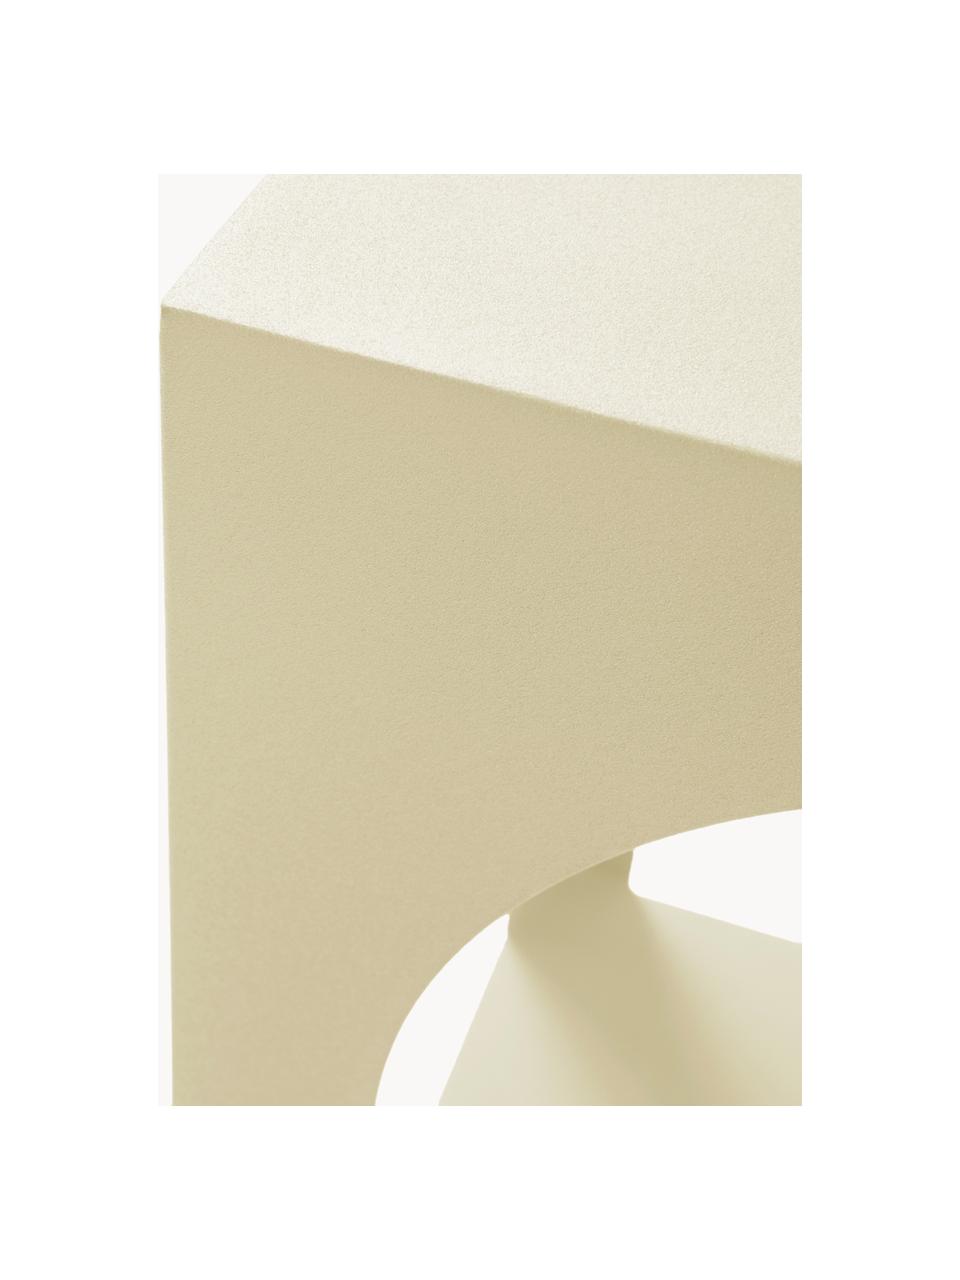 Odkládací stolek Vesta, Dřevovláknitá deska střední hustoty (MDF), jasanová dýha, Dřevo, lakováno světle žlutou barvou, Š 40 cm, V 59 cm